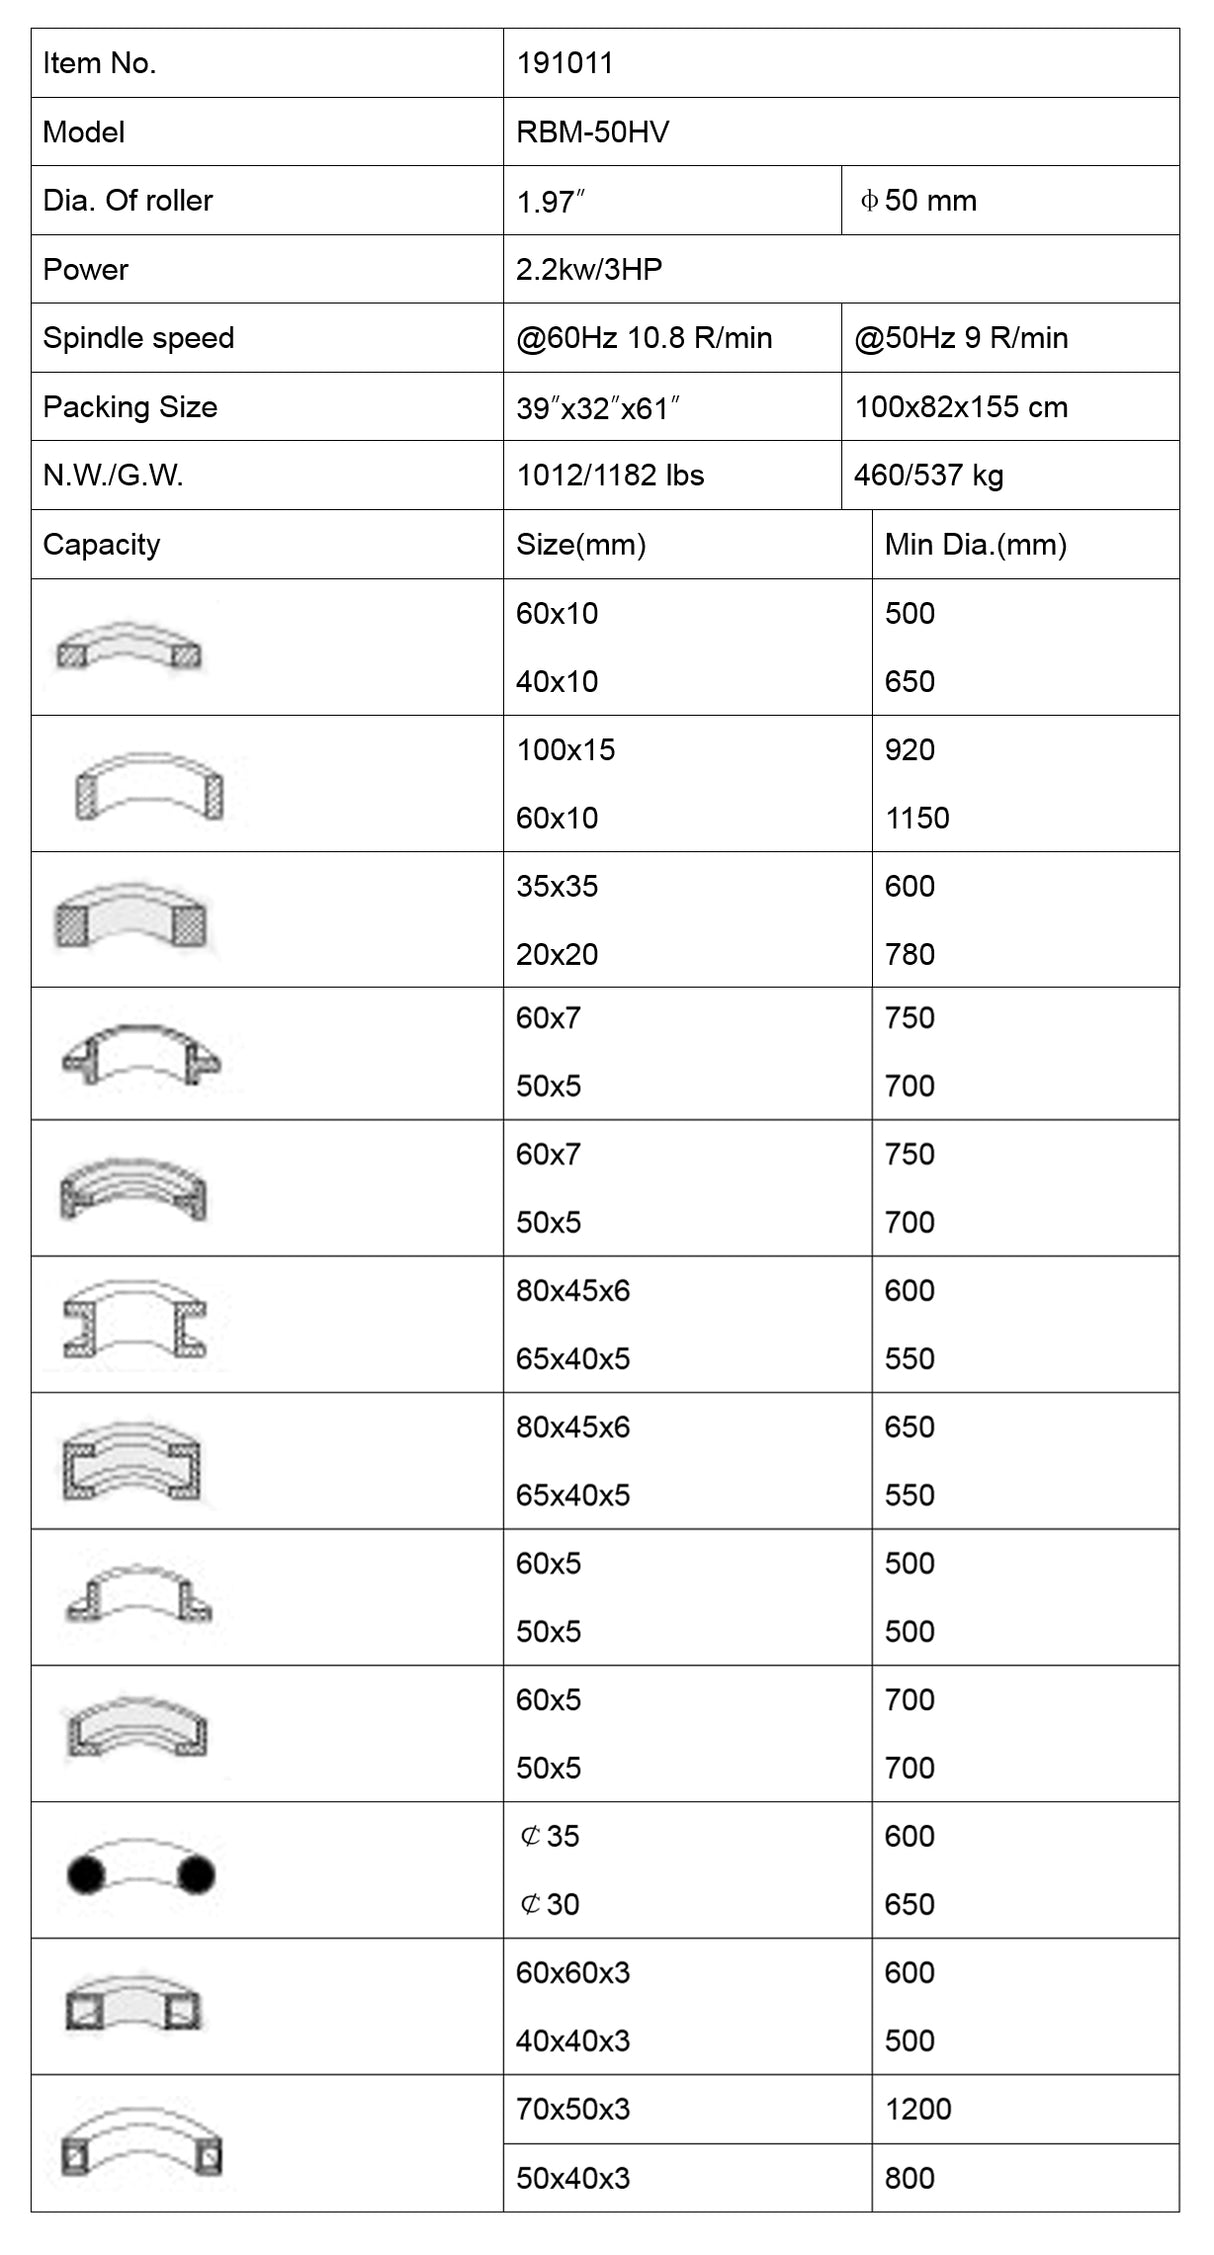 Kaka Industrial RBM-50HV Universal Profile Section Roll bending machine 230V460V-60HZ-3PH